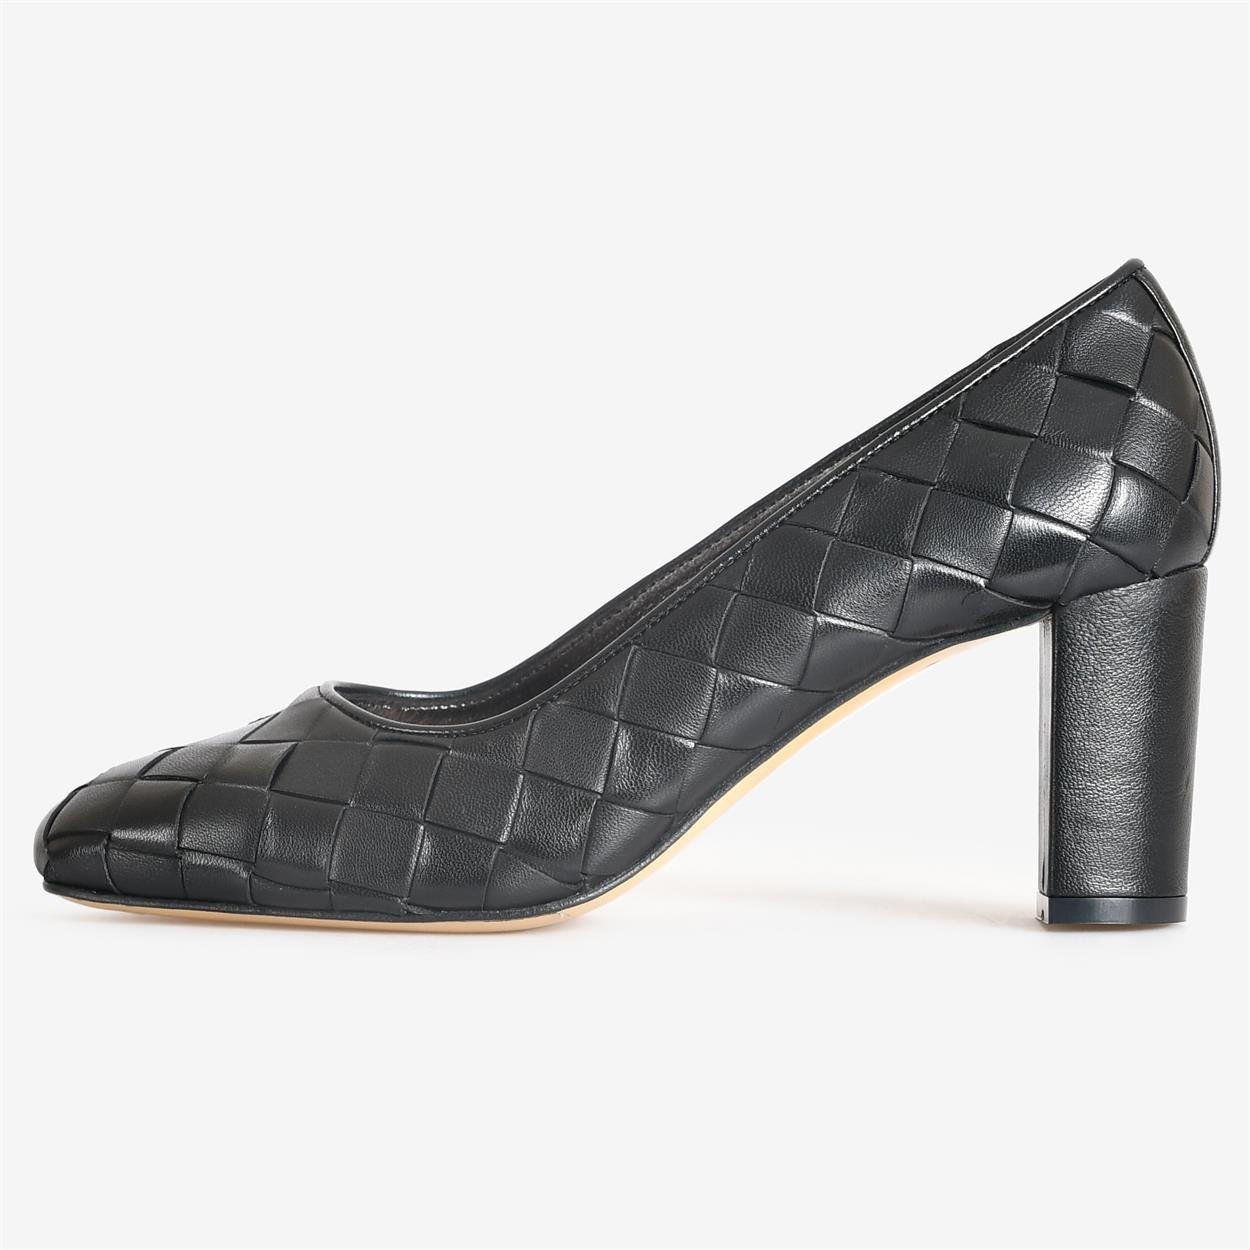 Flower Ayakkabı | Siyah Örgü Deri Kadın Topuklu Ayakkabı